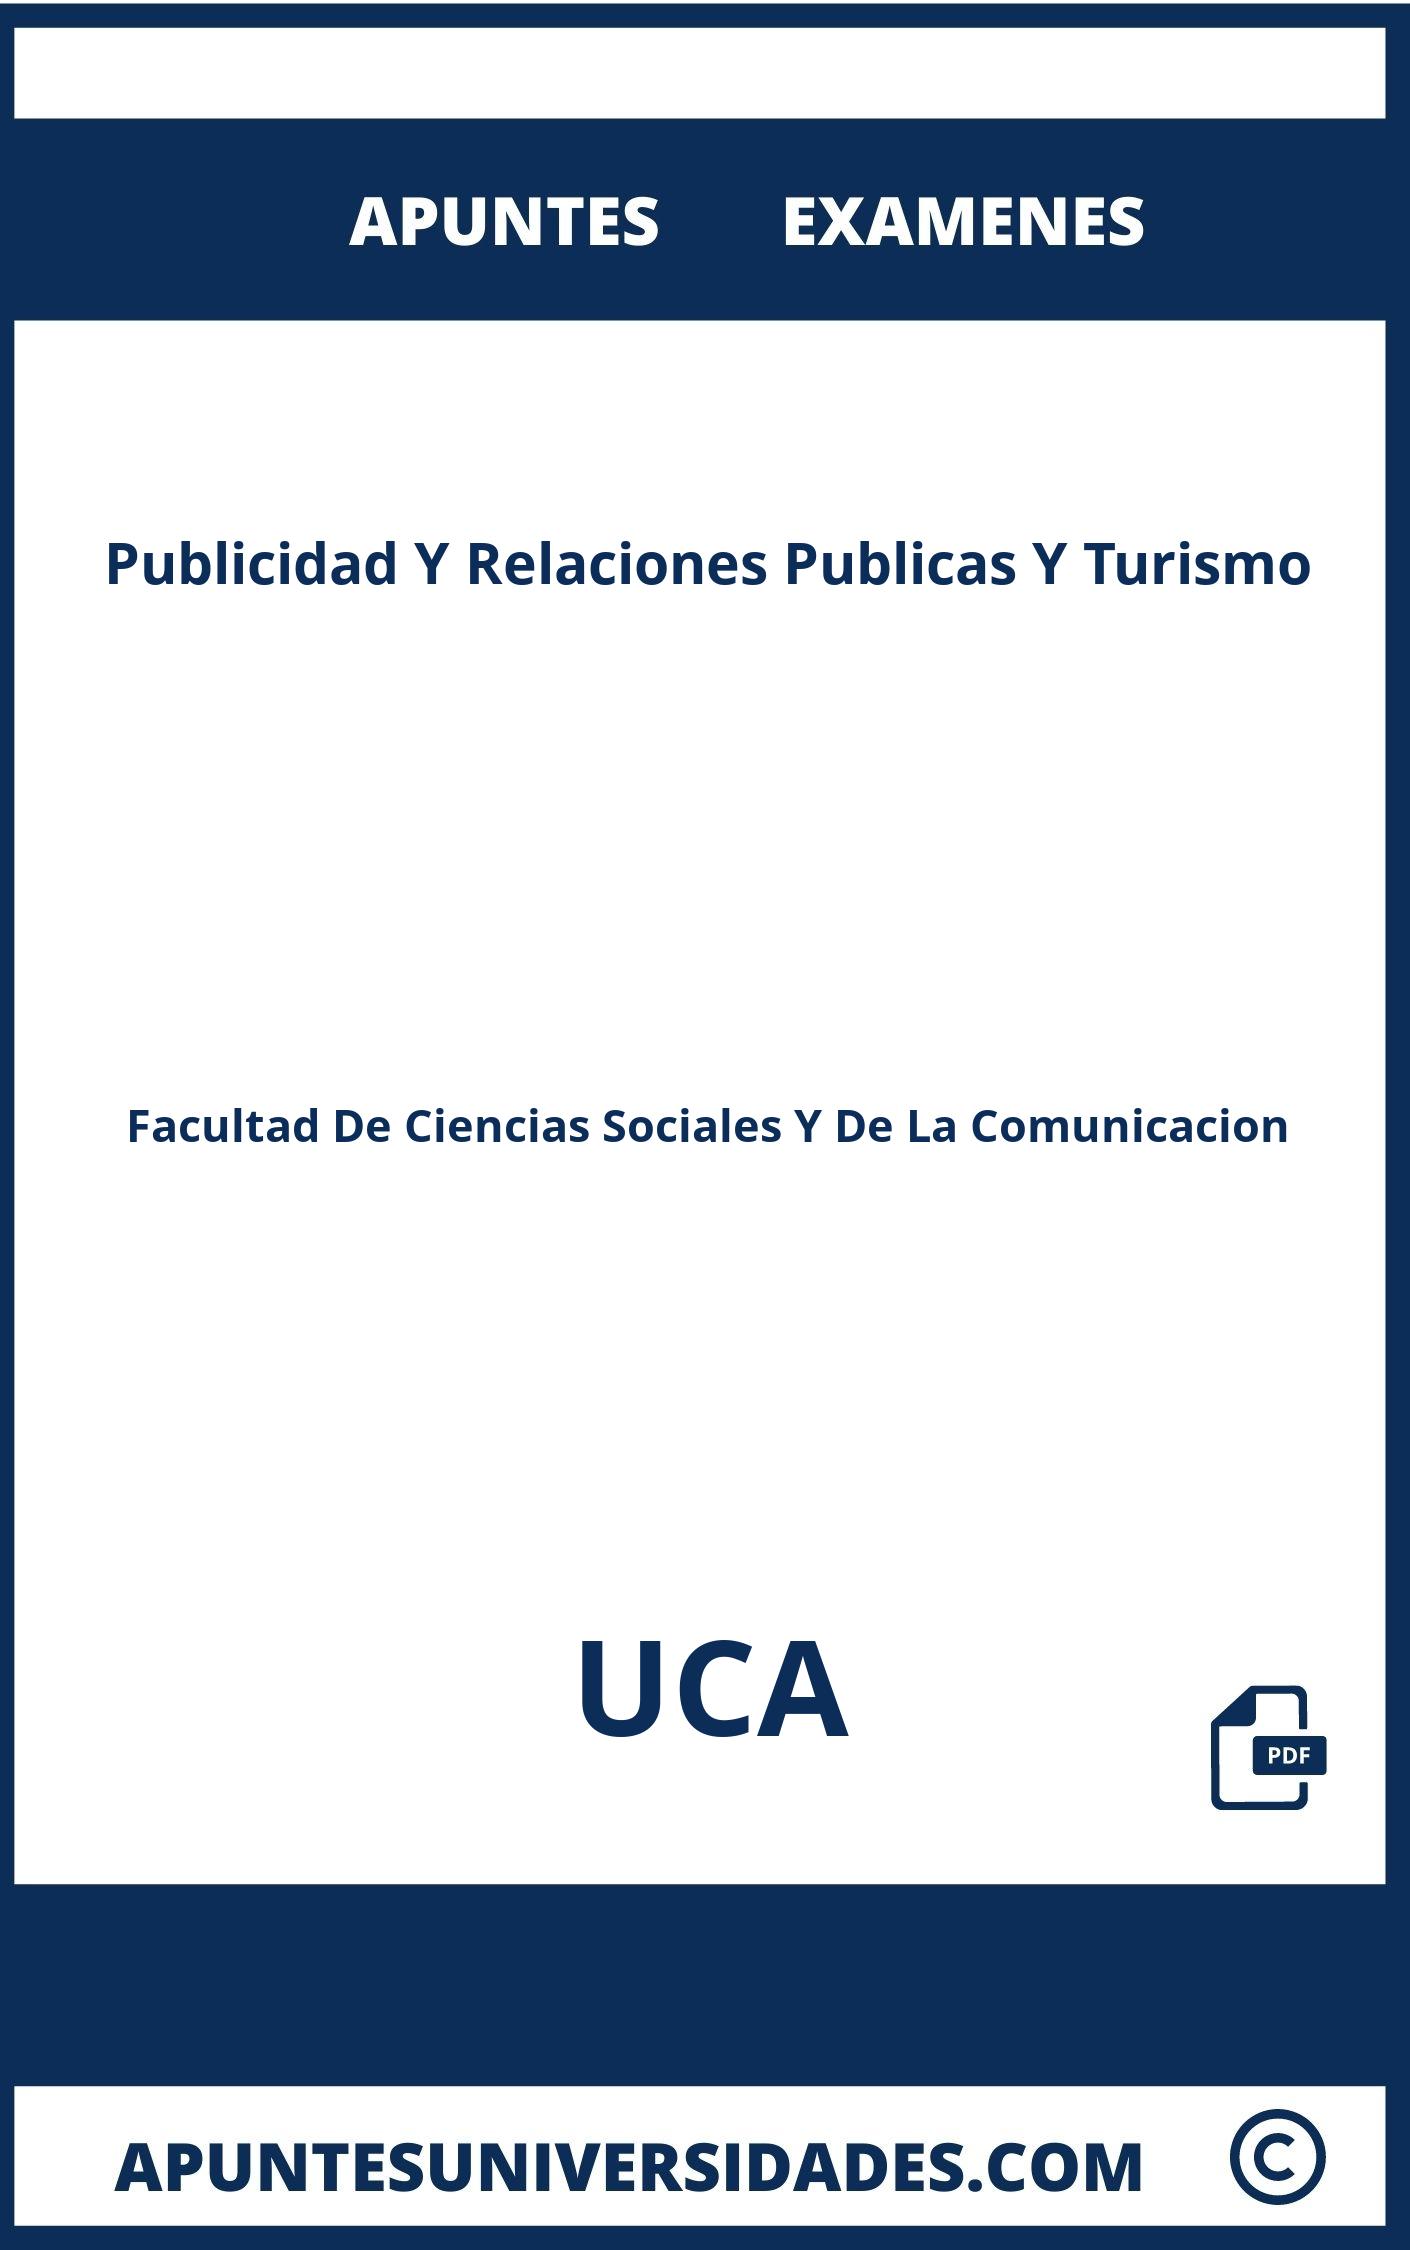 Publicidad Y Relaciones Publicas Y Turismo UCA Examenes Apuntes